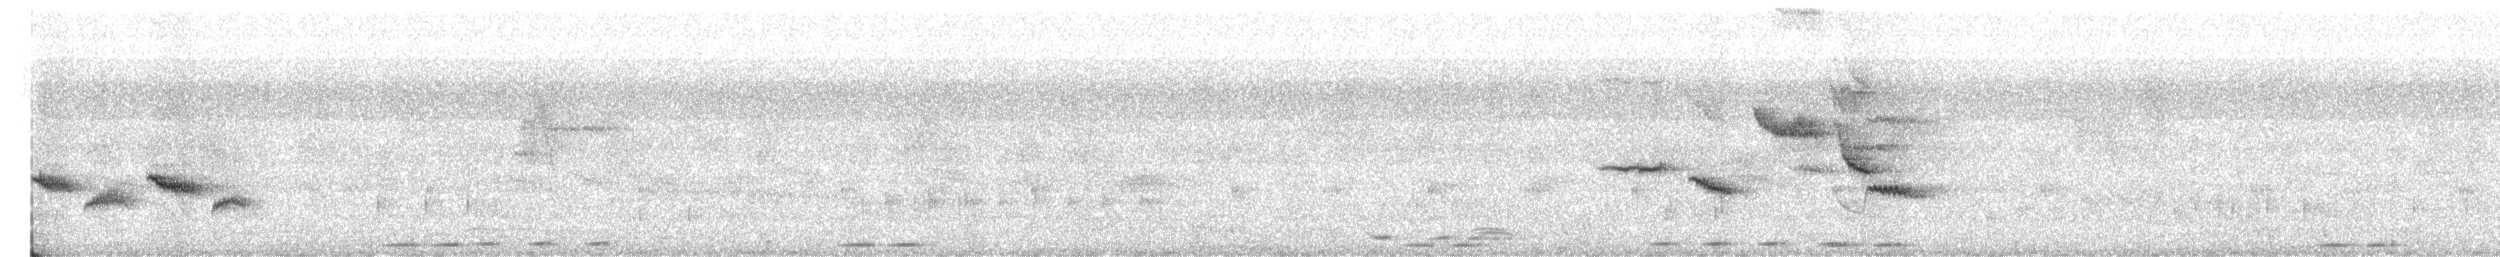 Ak Karınlı Çivit Bülbülü - ML482249471